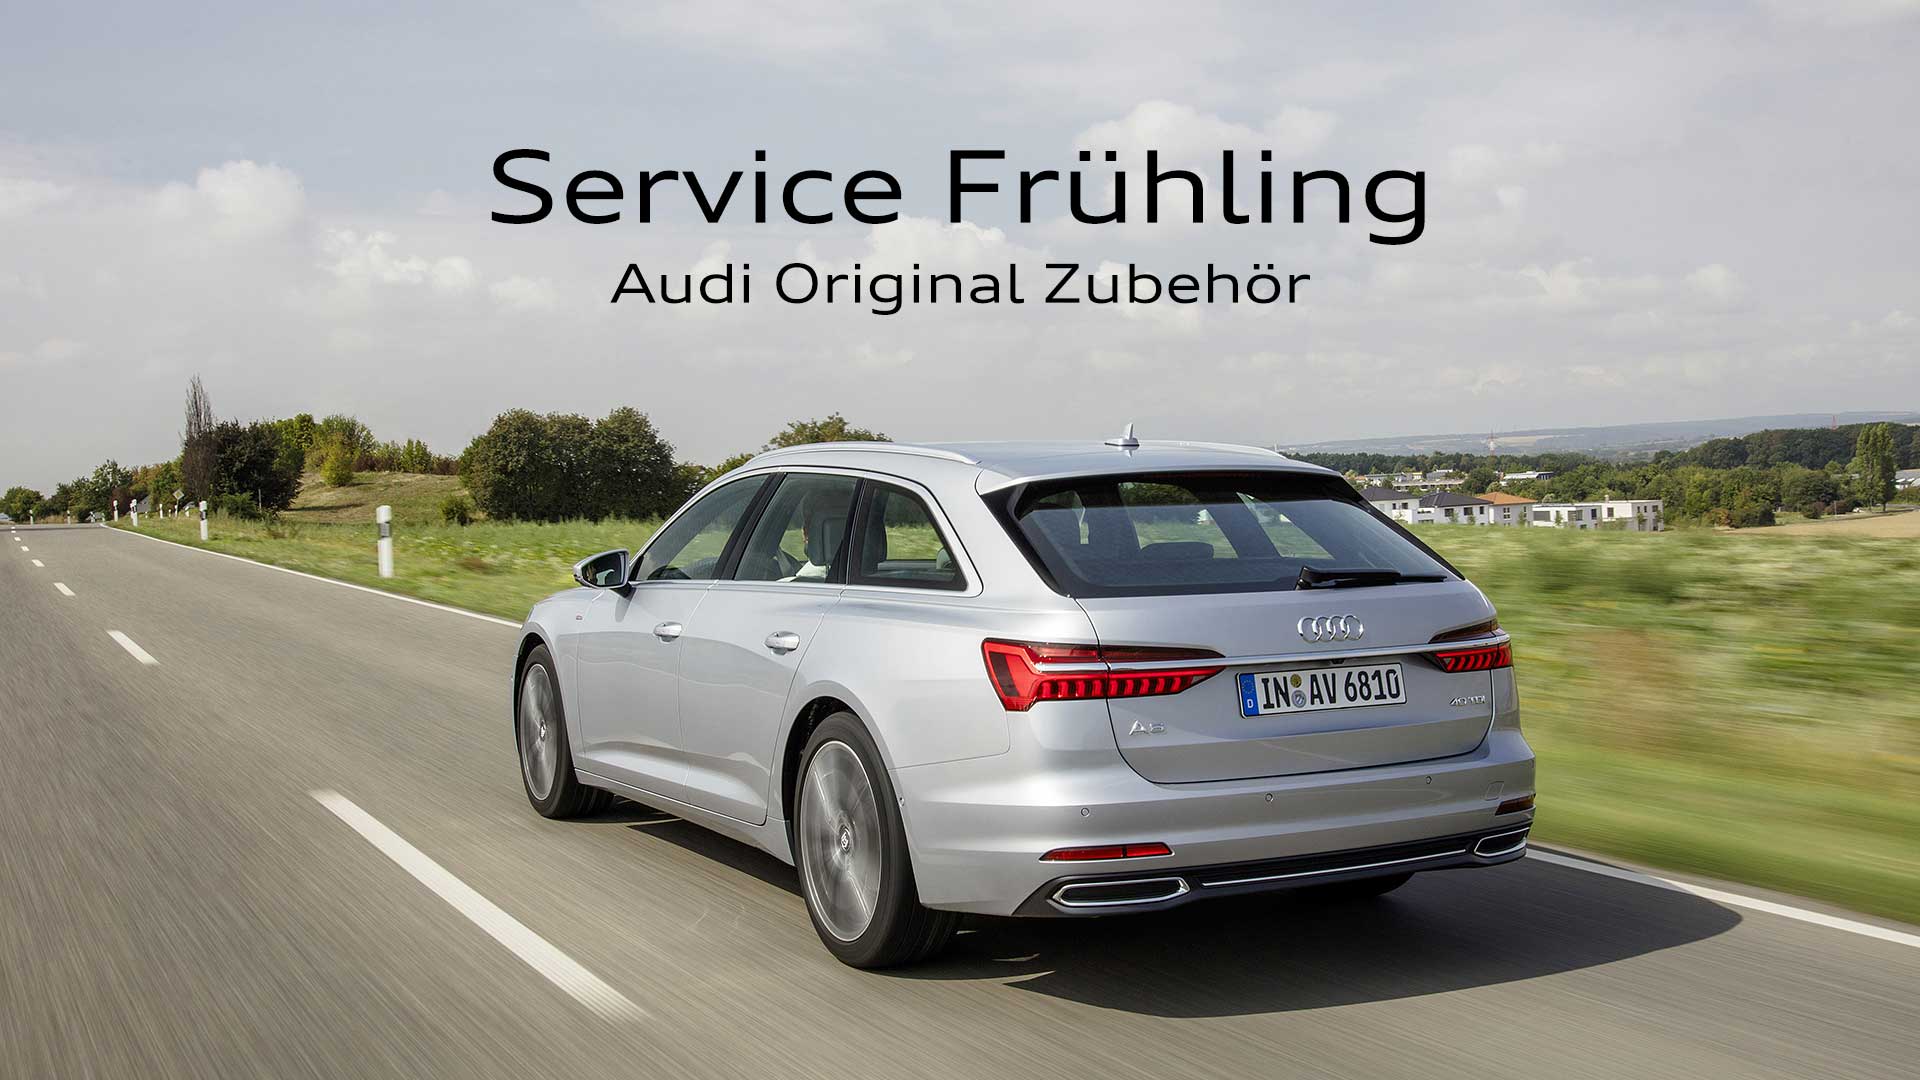 Frühlingsservice für Ihren Audi